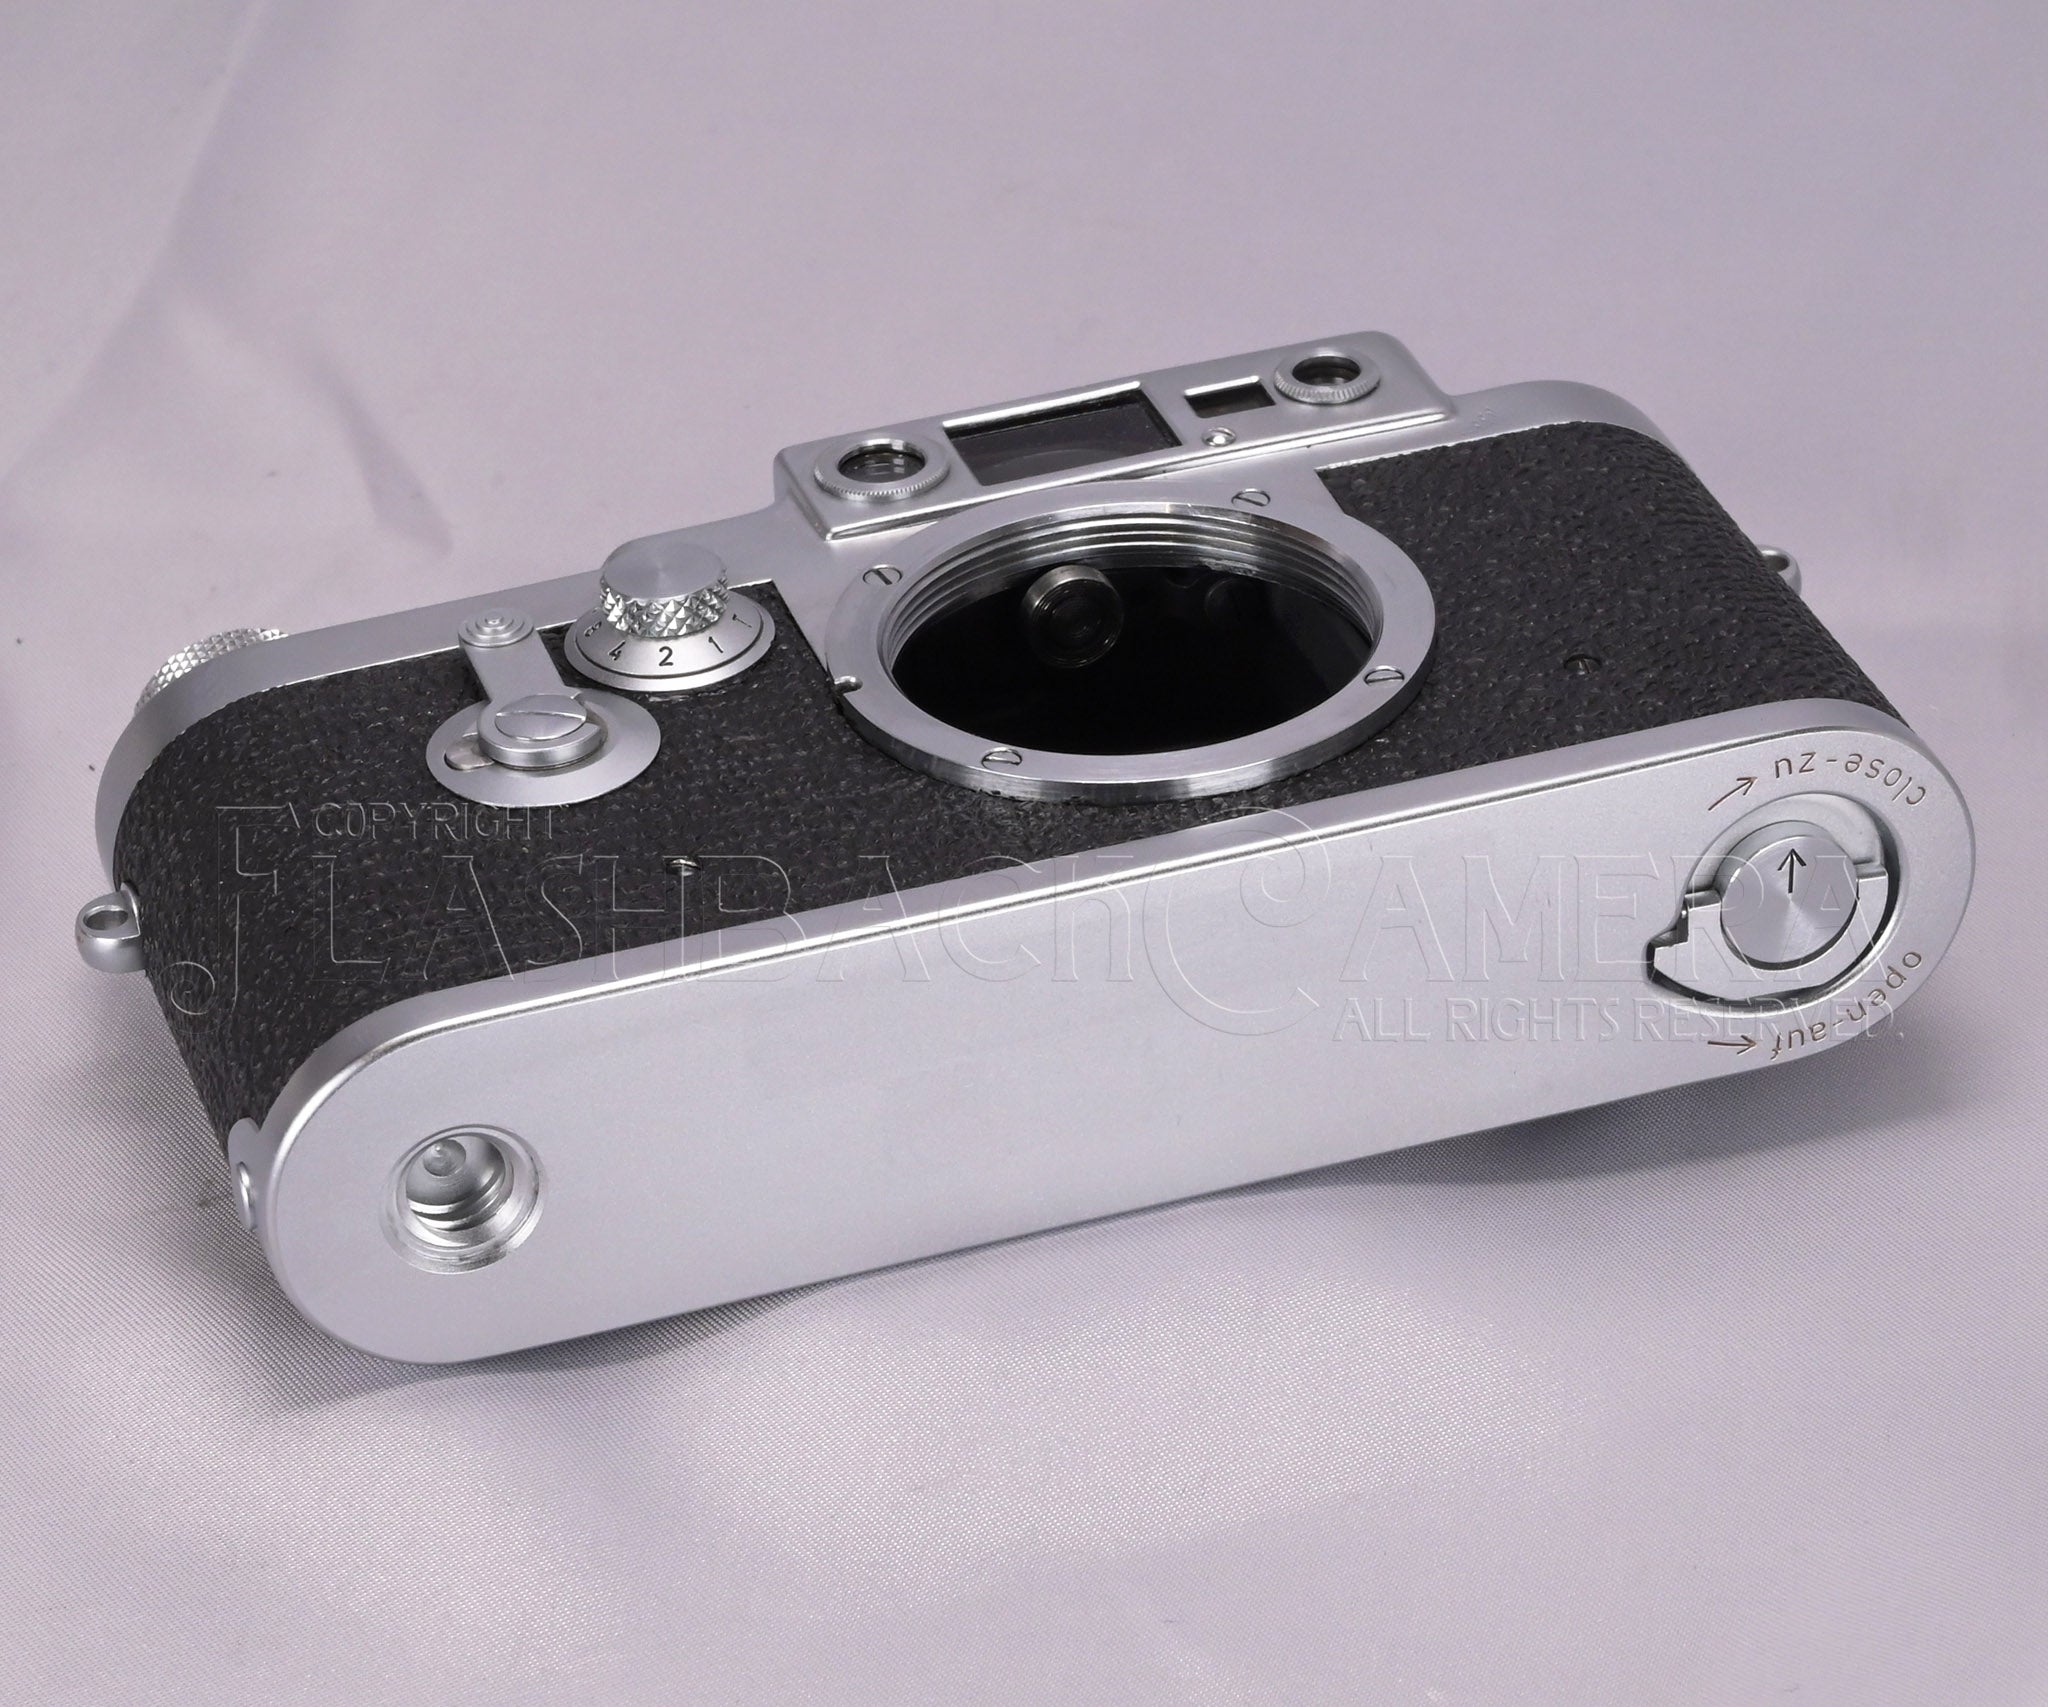 Leica ライカ Ⅲa かなり使い込んだ雰囲気 - フィルムカメラ